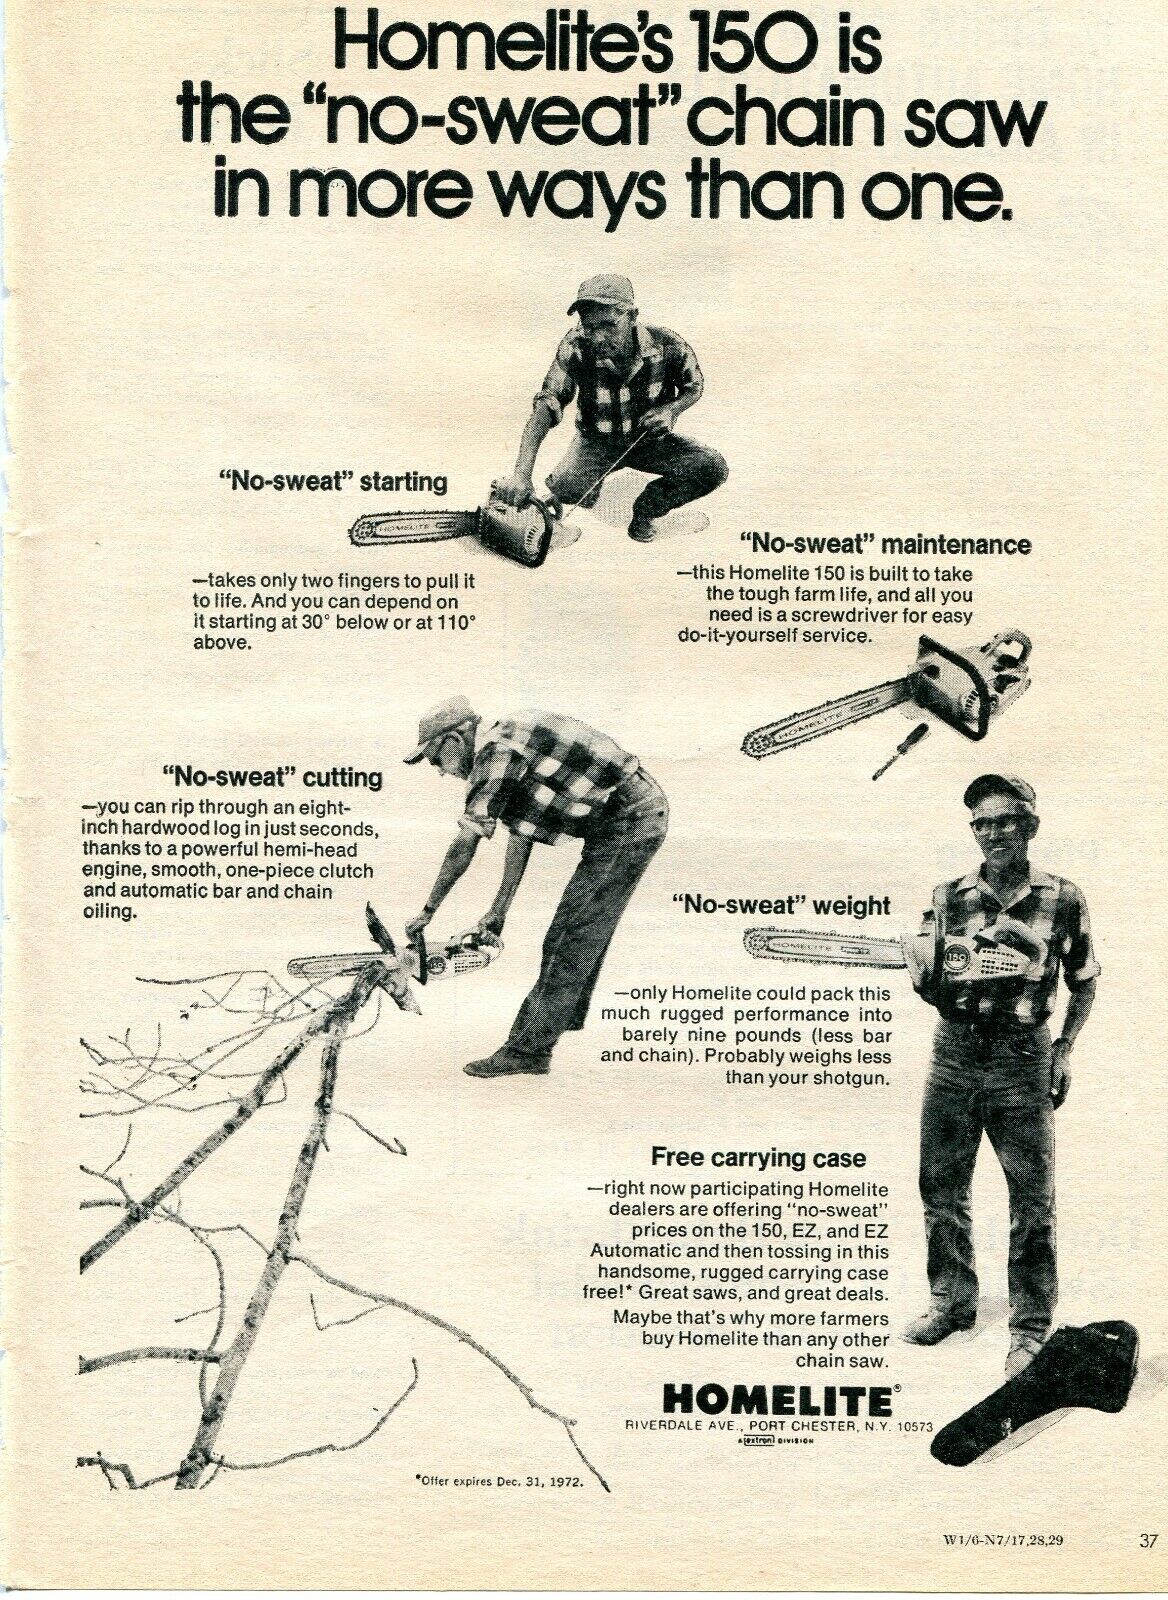 1972 Print Ad of Homelite 150 No-Sweat Chain Saw